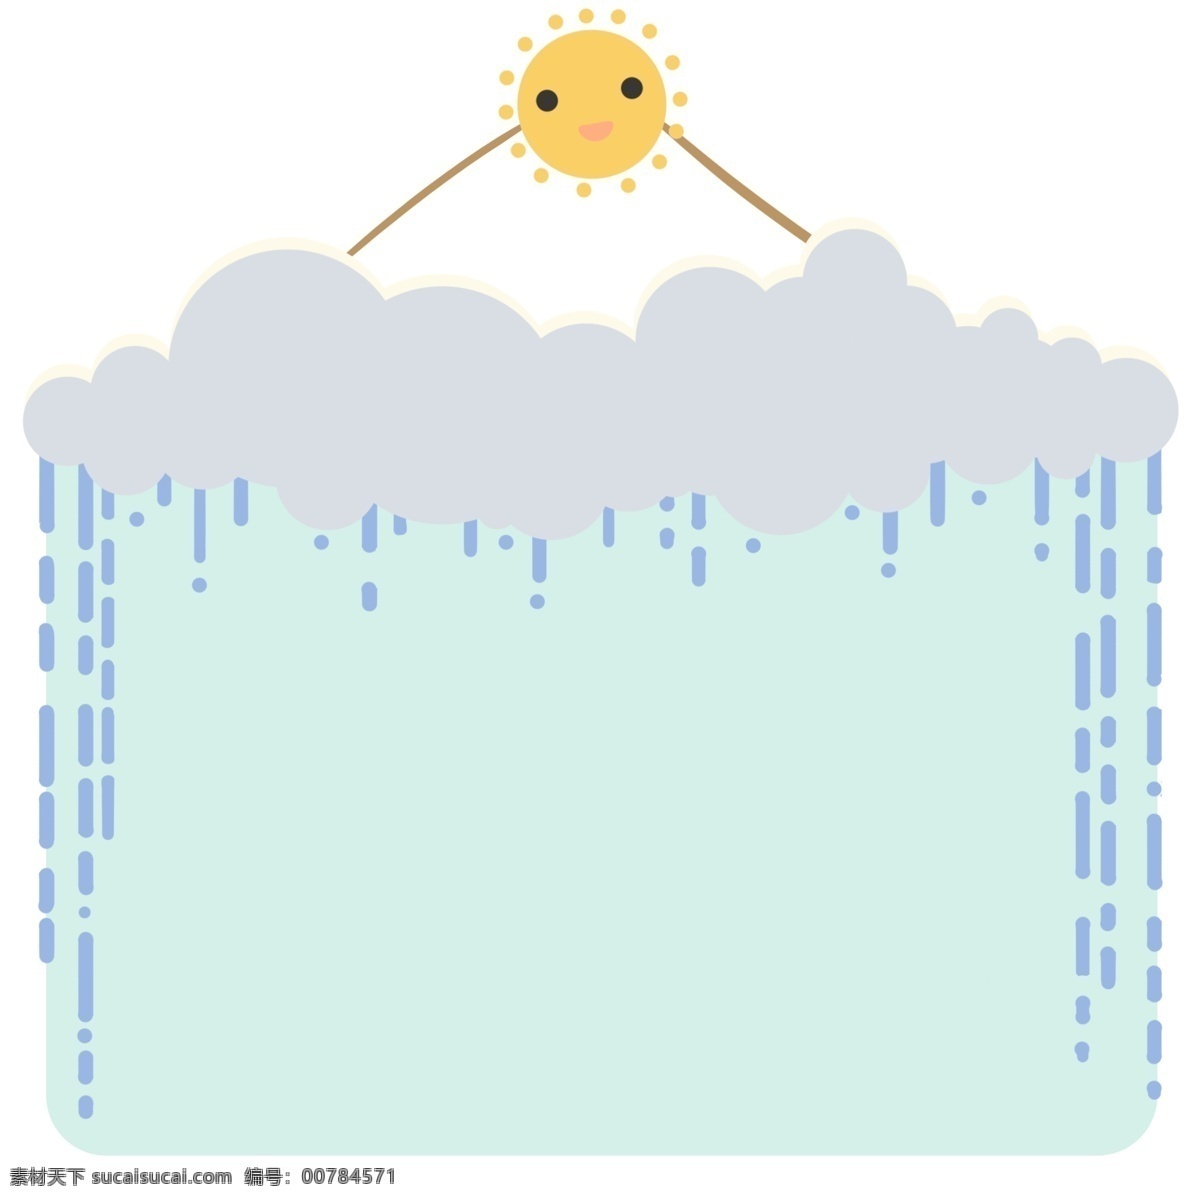 可爱 太阳 云雨 边框 黄色的太阳 卡通插画 可爱的边框 漂亮的边框 美丽的边框 创意边框 蓝色的水珠